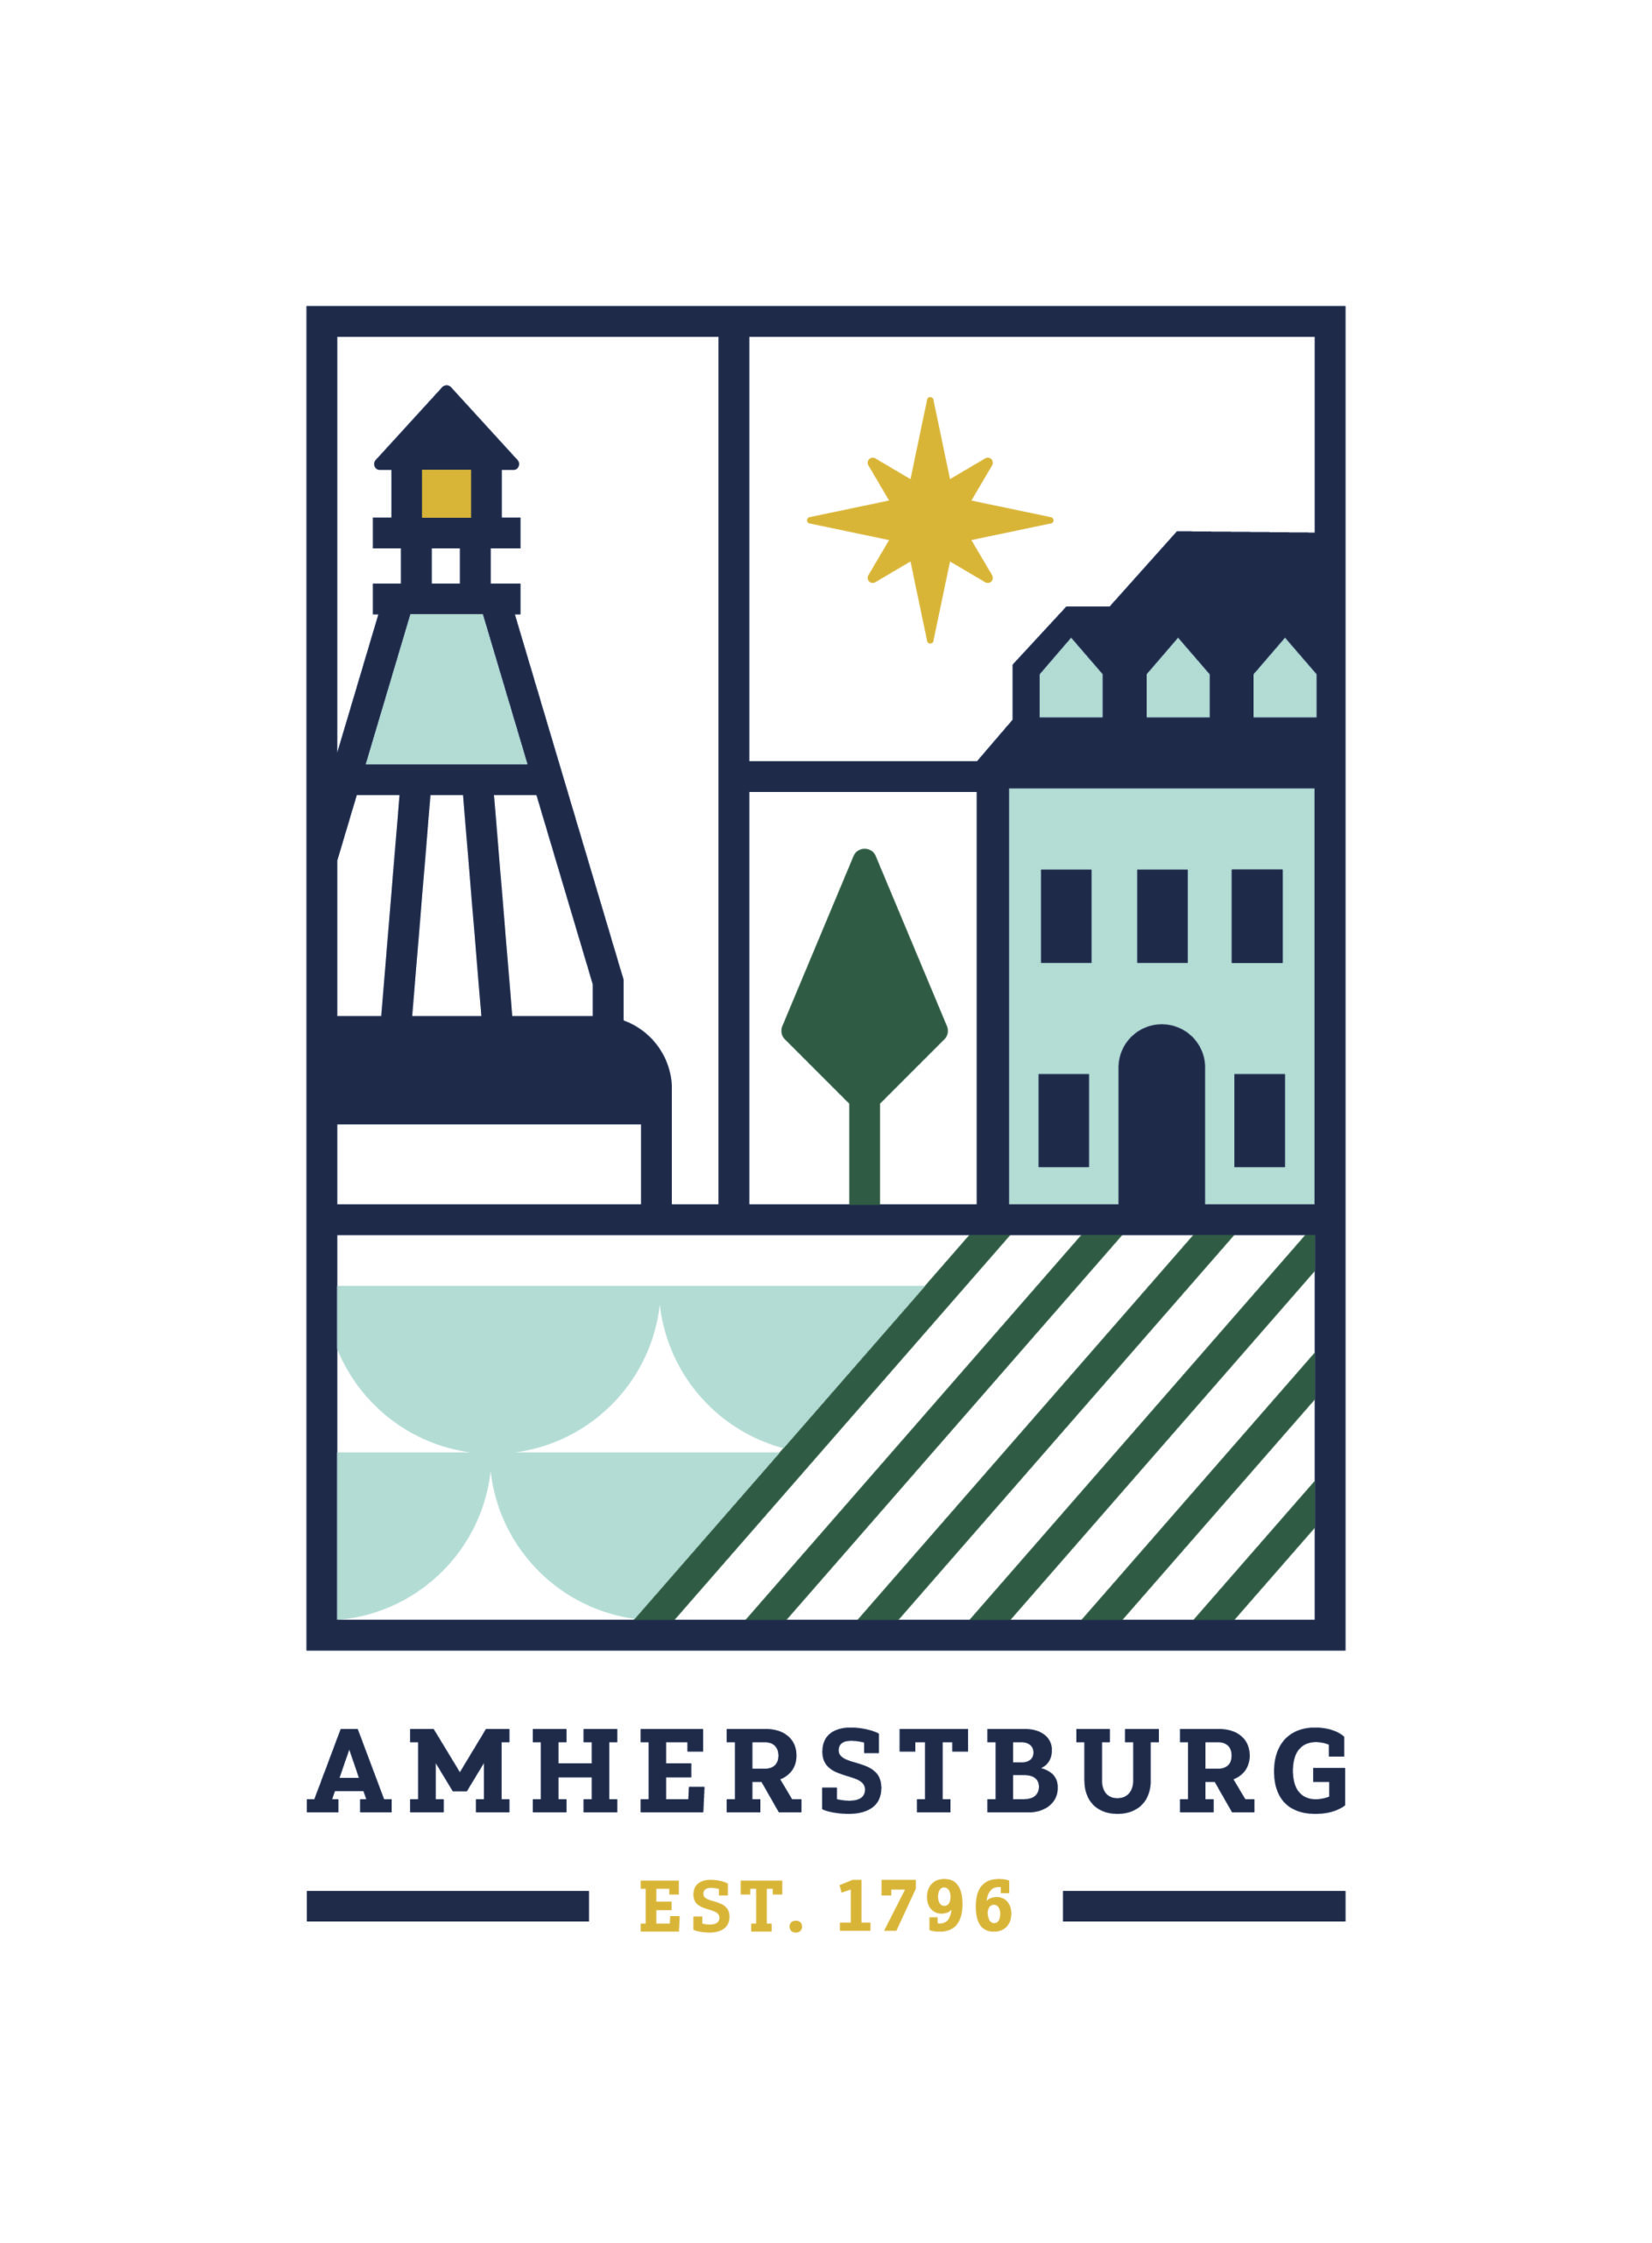 Visit Amherstburg logo